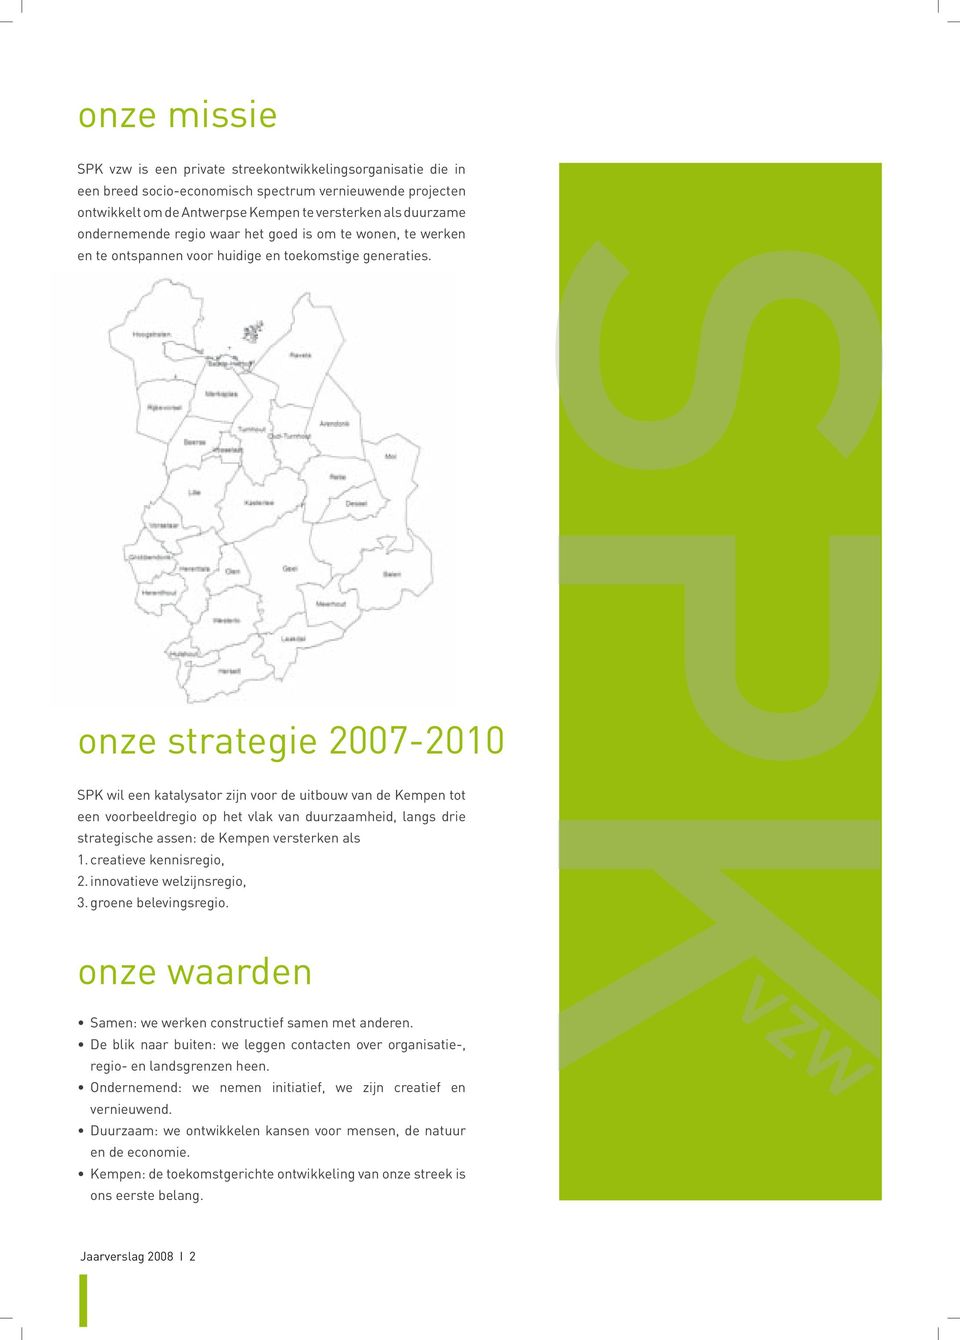 onze strategie 2007-2010 SPK wil een katalysator zijn voor de uitbouw van de Kempen tot een voorbeeldregio op het vlak van duurzaamheid, langs drie strategische assen: de Kempen versterken als 1.